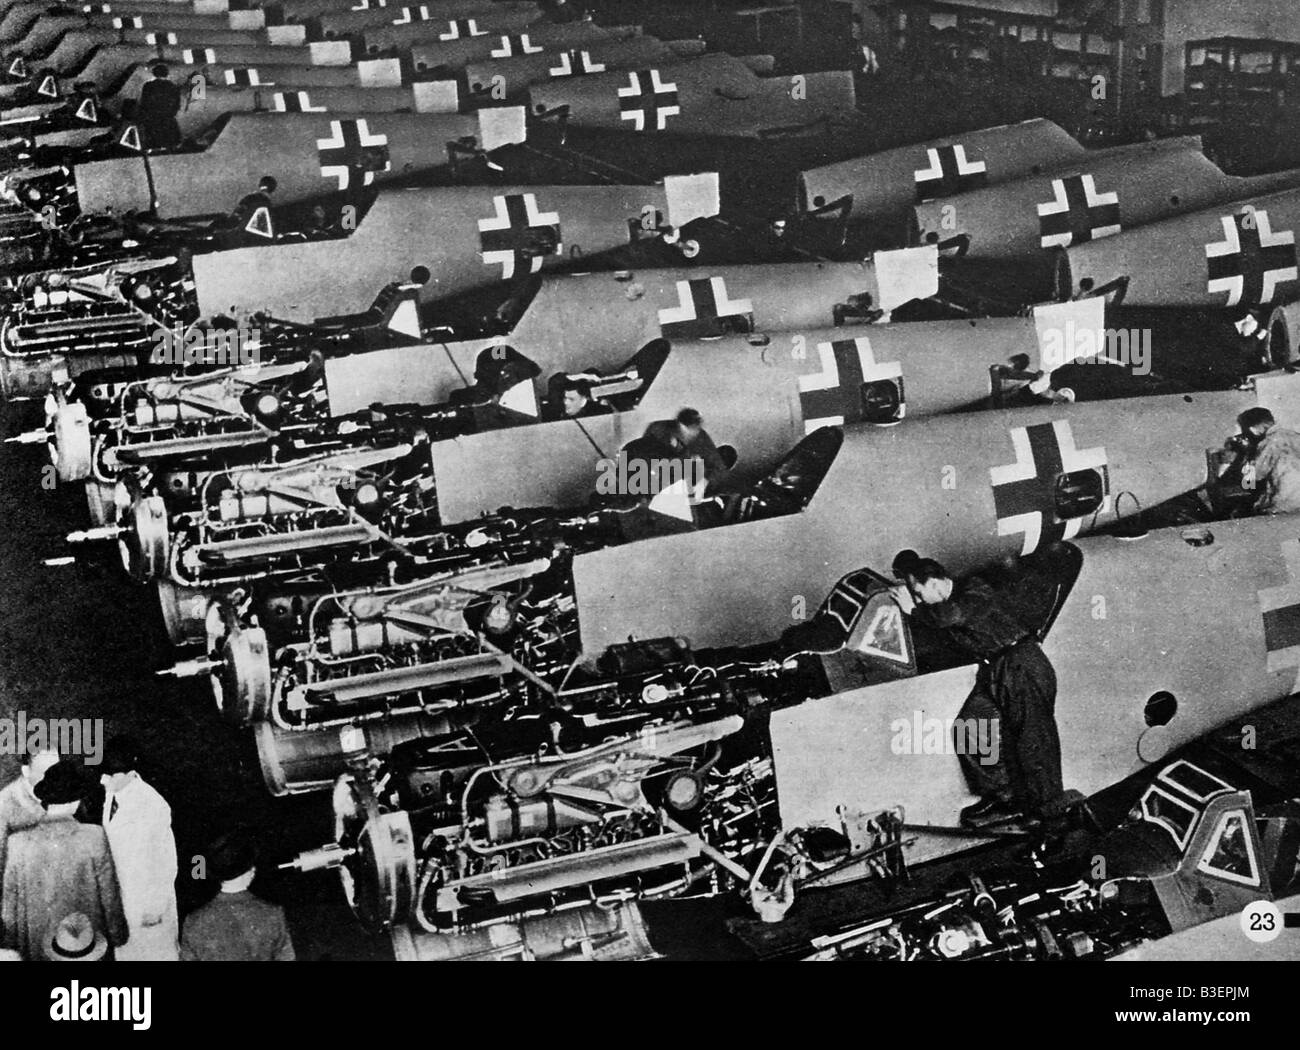 Événements, deuxième Guerre mondiale/seconde Guerre mondiale, Allemagne, industrie des armements, production d'avions Messerschmitt Bf 109, vers 1940 - 1944, Banque D'Images